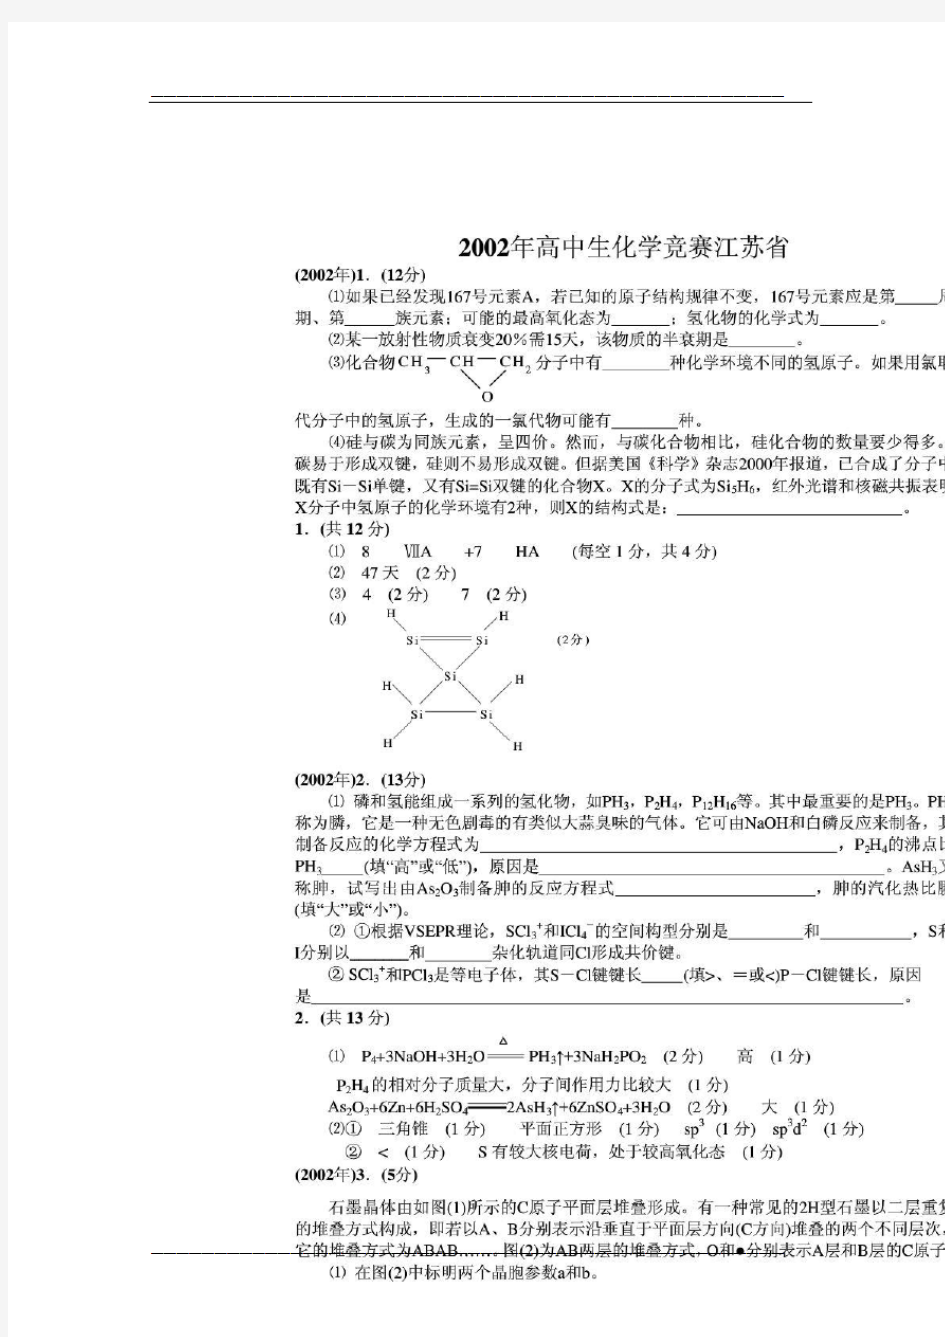 【精品】第16届高中生化学竞赛(江苏赛区)夏令营选拔赛试题